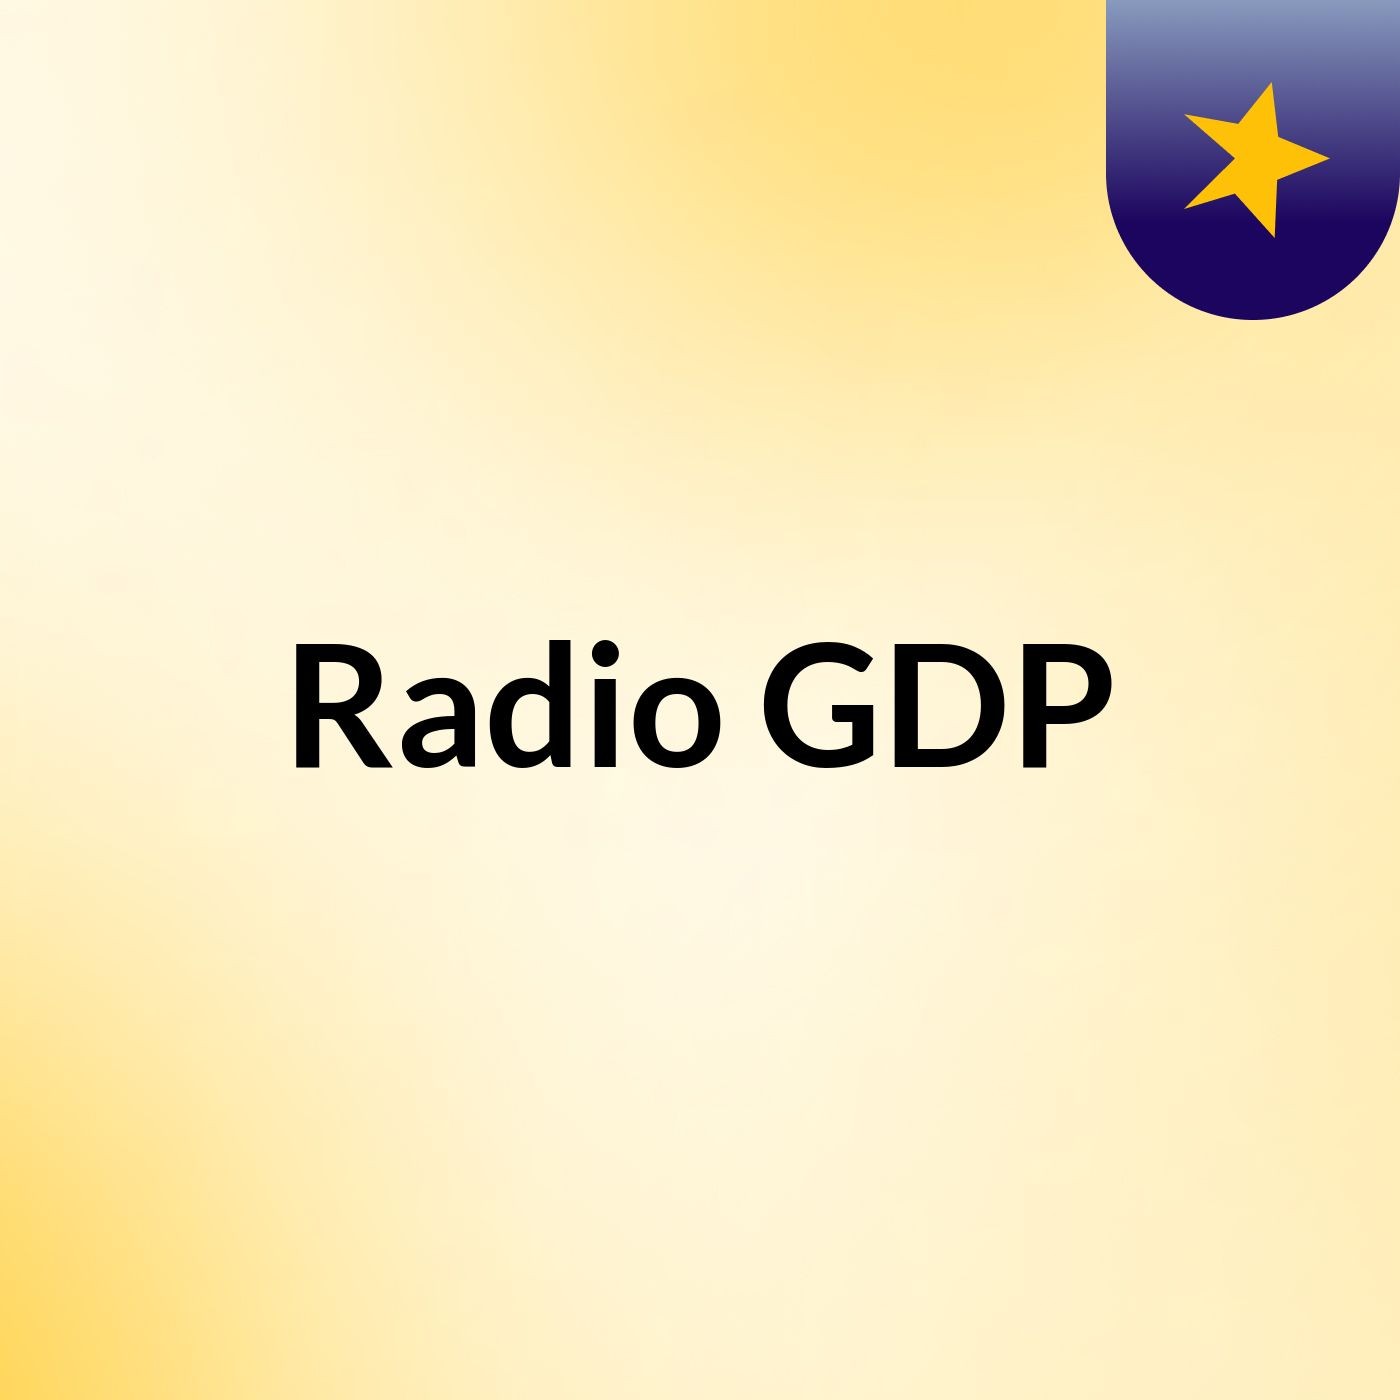 Radio GDP